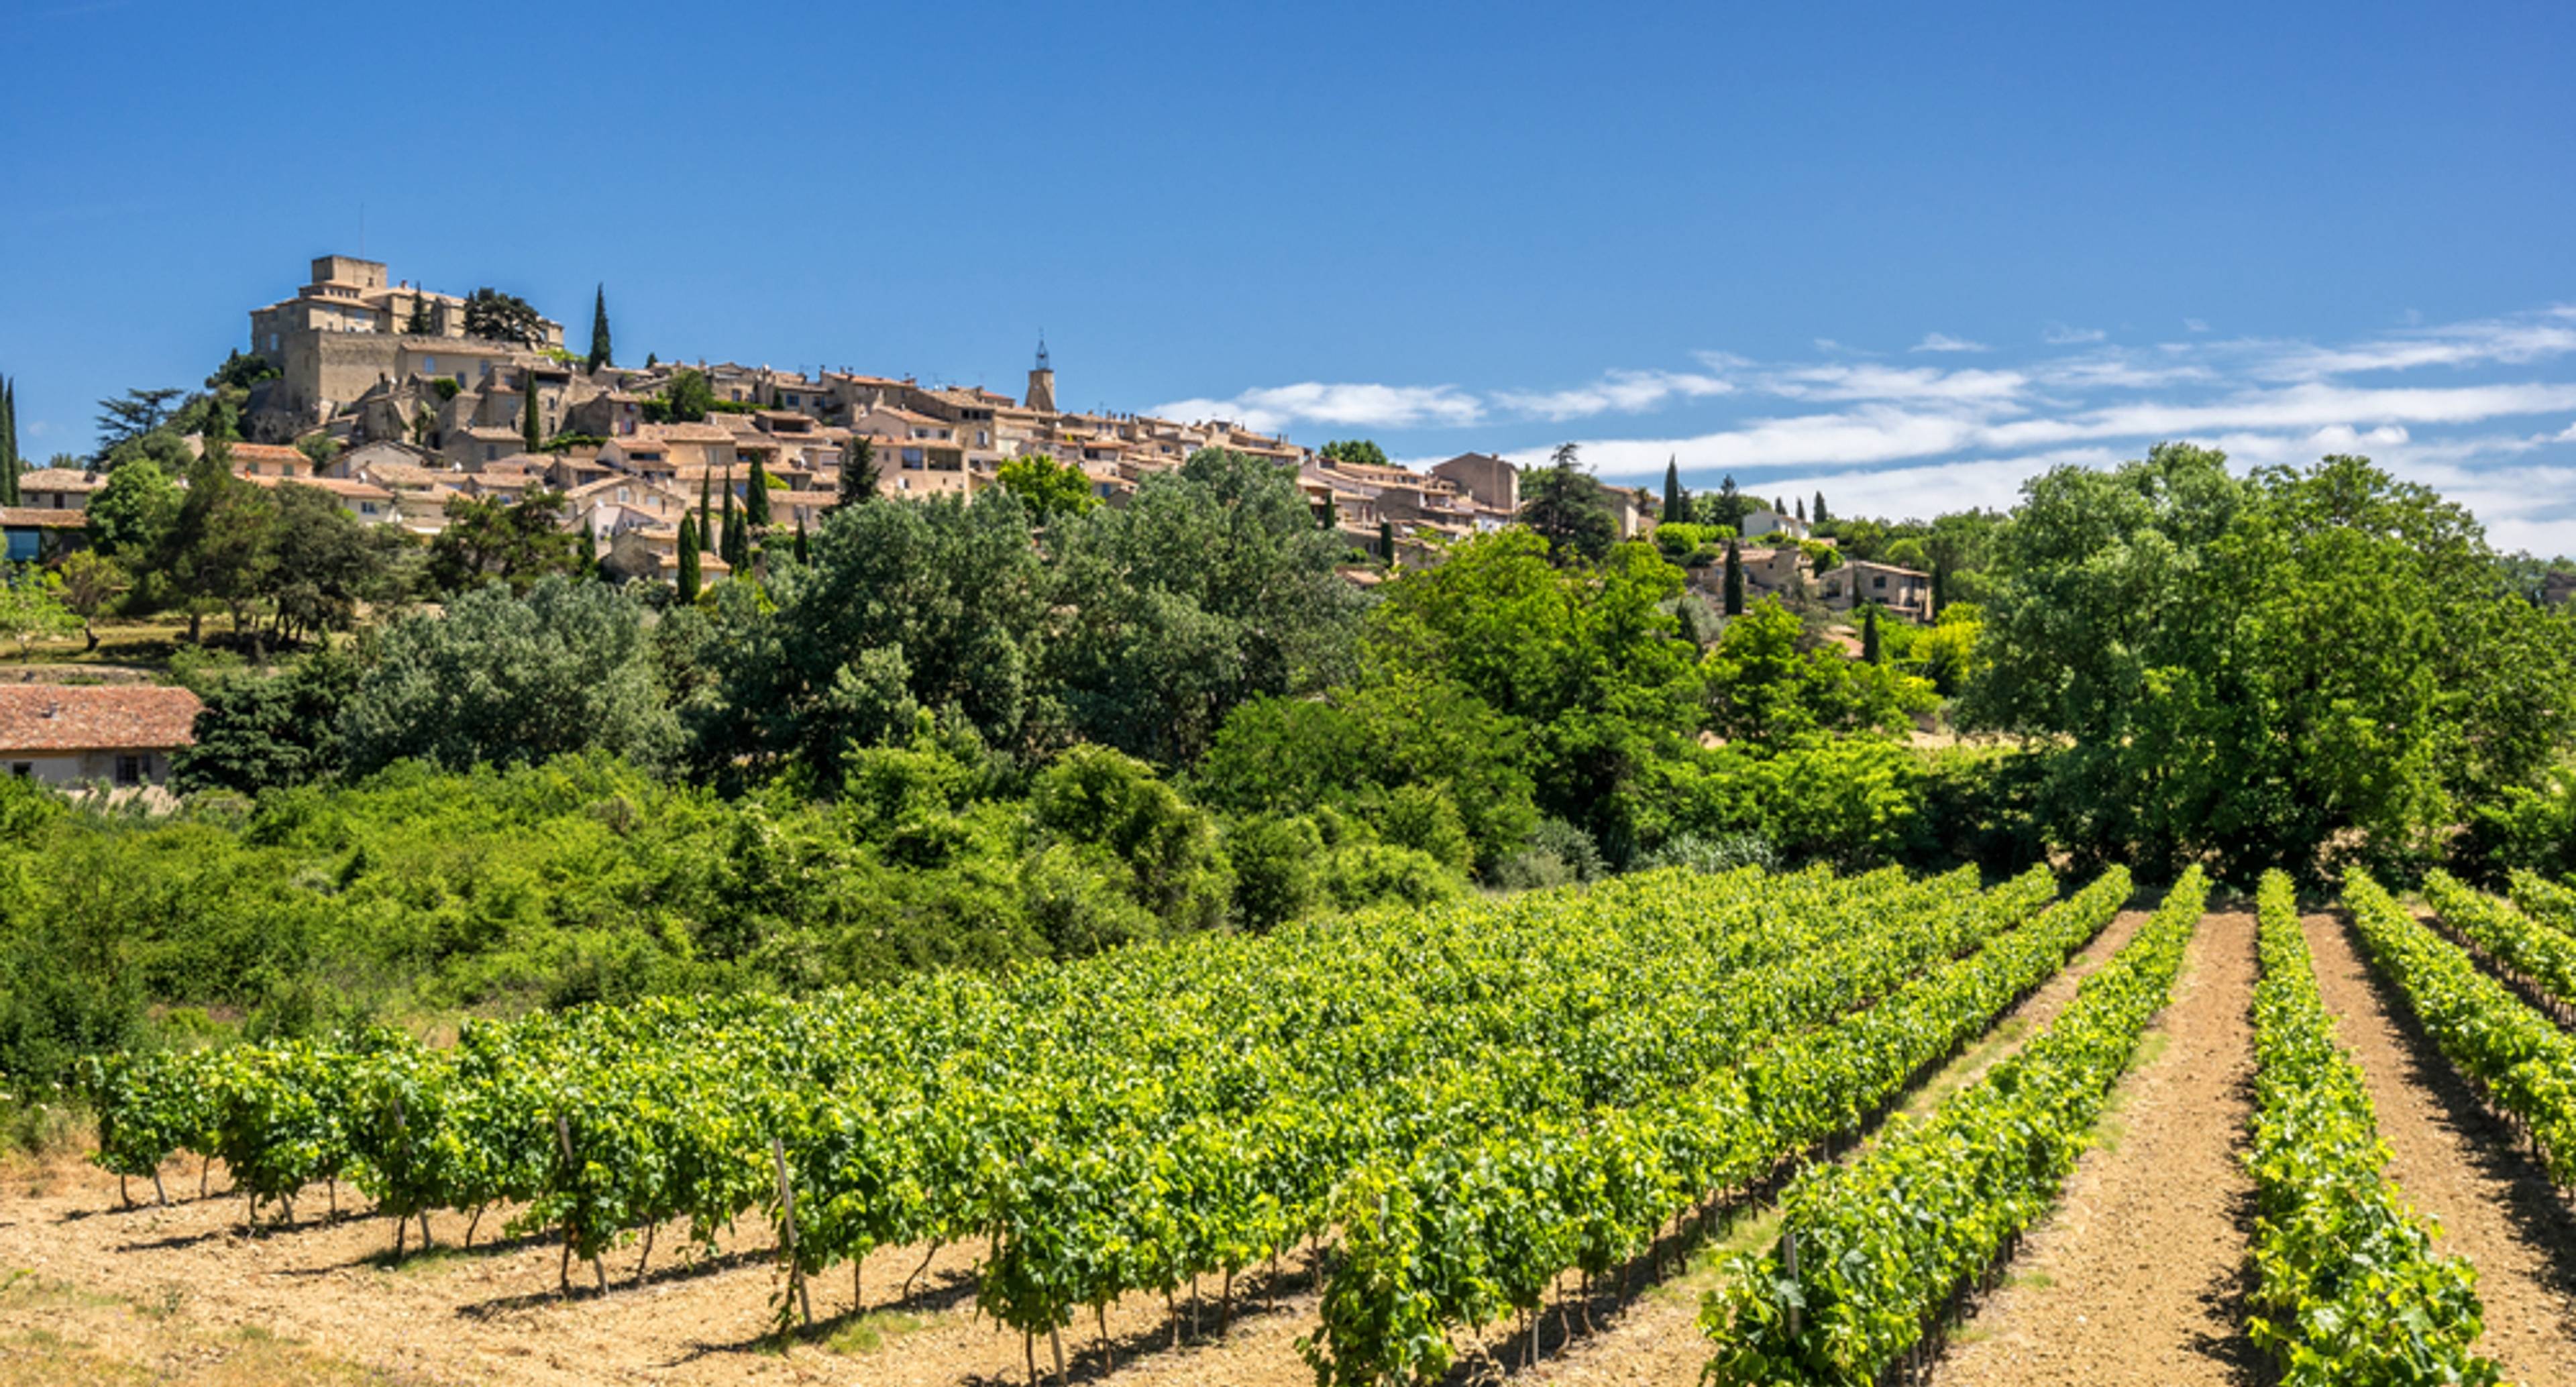 Traditionelle Dörfer und Weine in der Provence